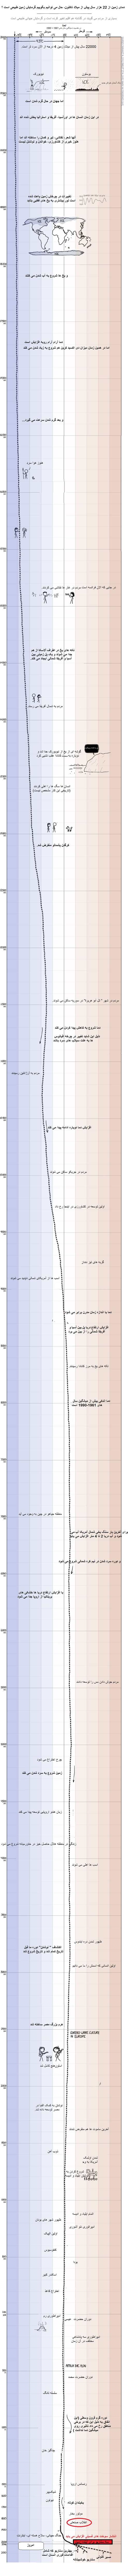 نمودار گرمایش زمین